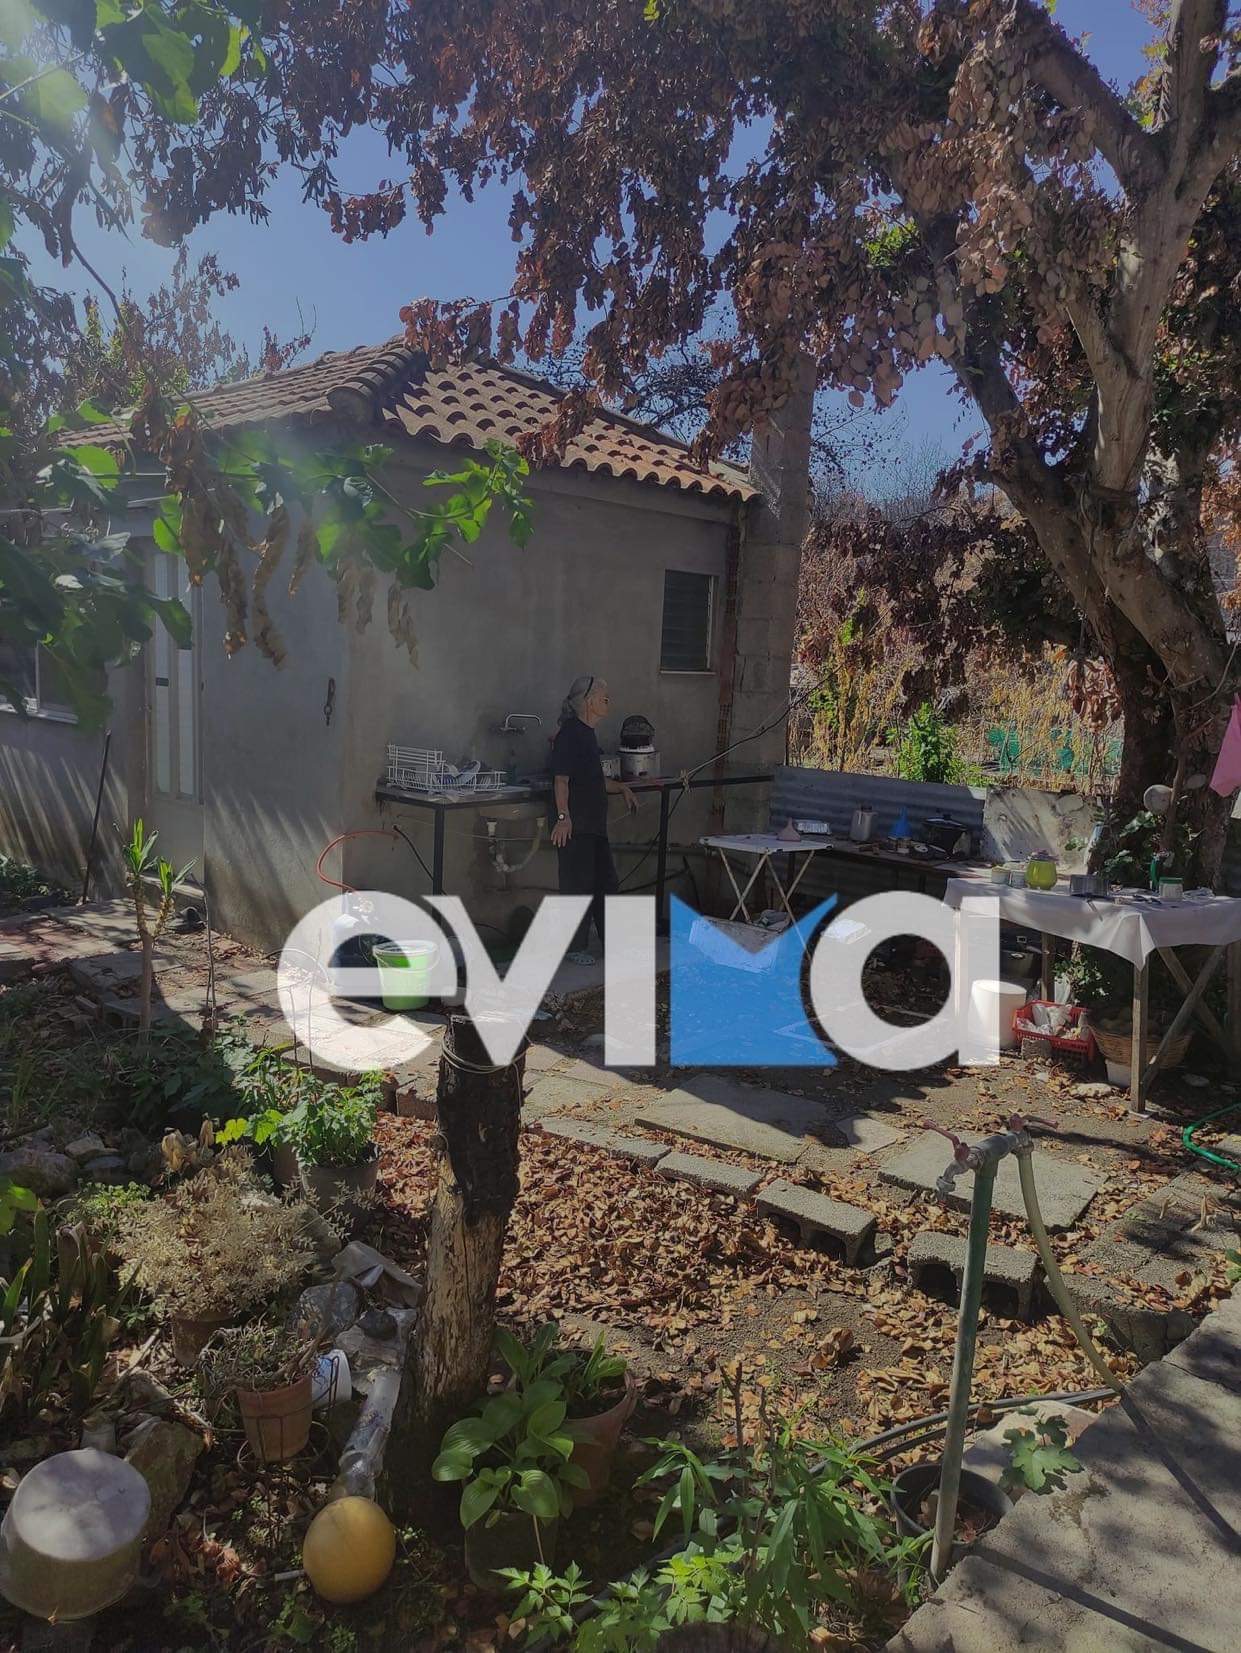 Β. Εύβοια: Με δάκρυα στα μάτια βλέπει τους εθελοντές να καθαρίζουν το καμένο της σπίτι [εικόνες]